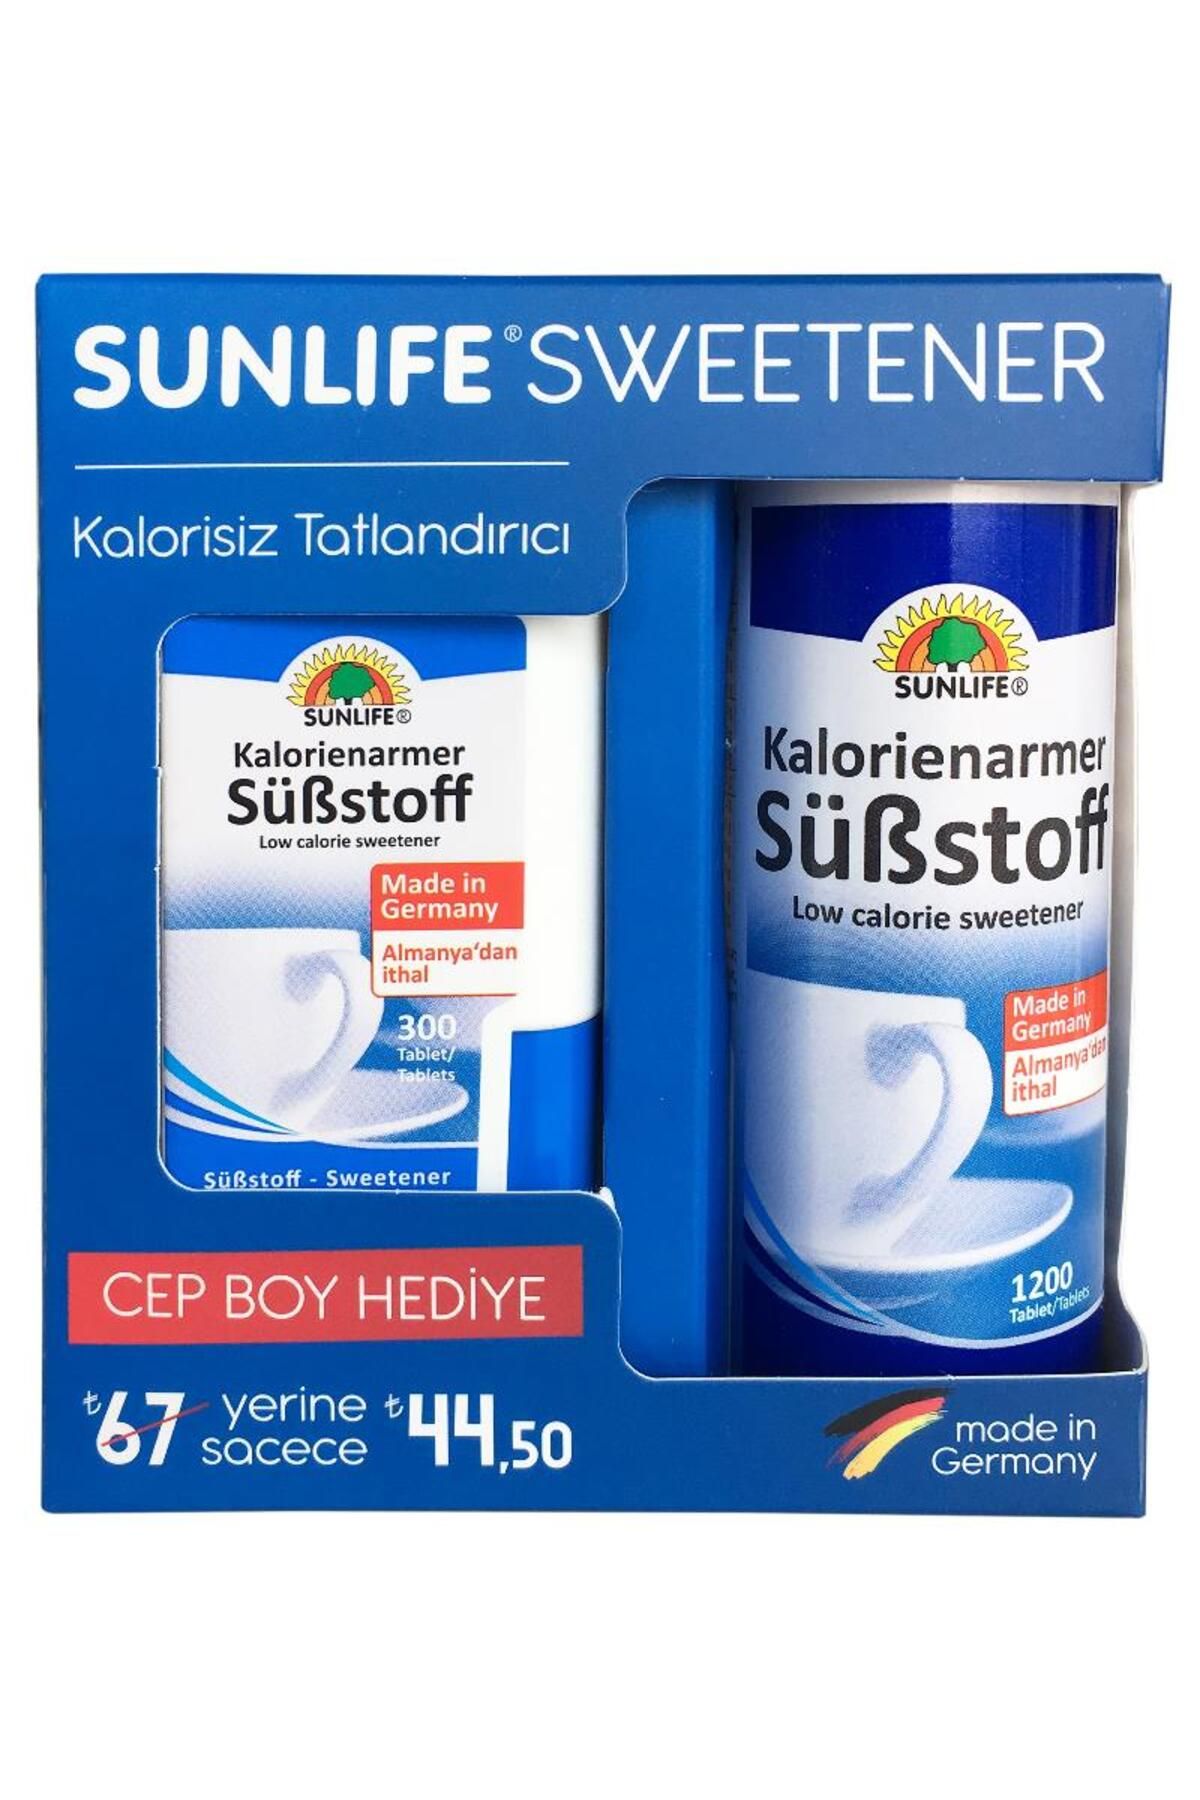 Sunlife Sweetener Tatlanıdırıcı Hediyeli 1200 300 Tablet